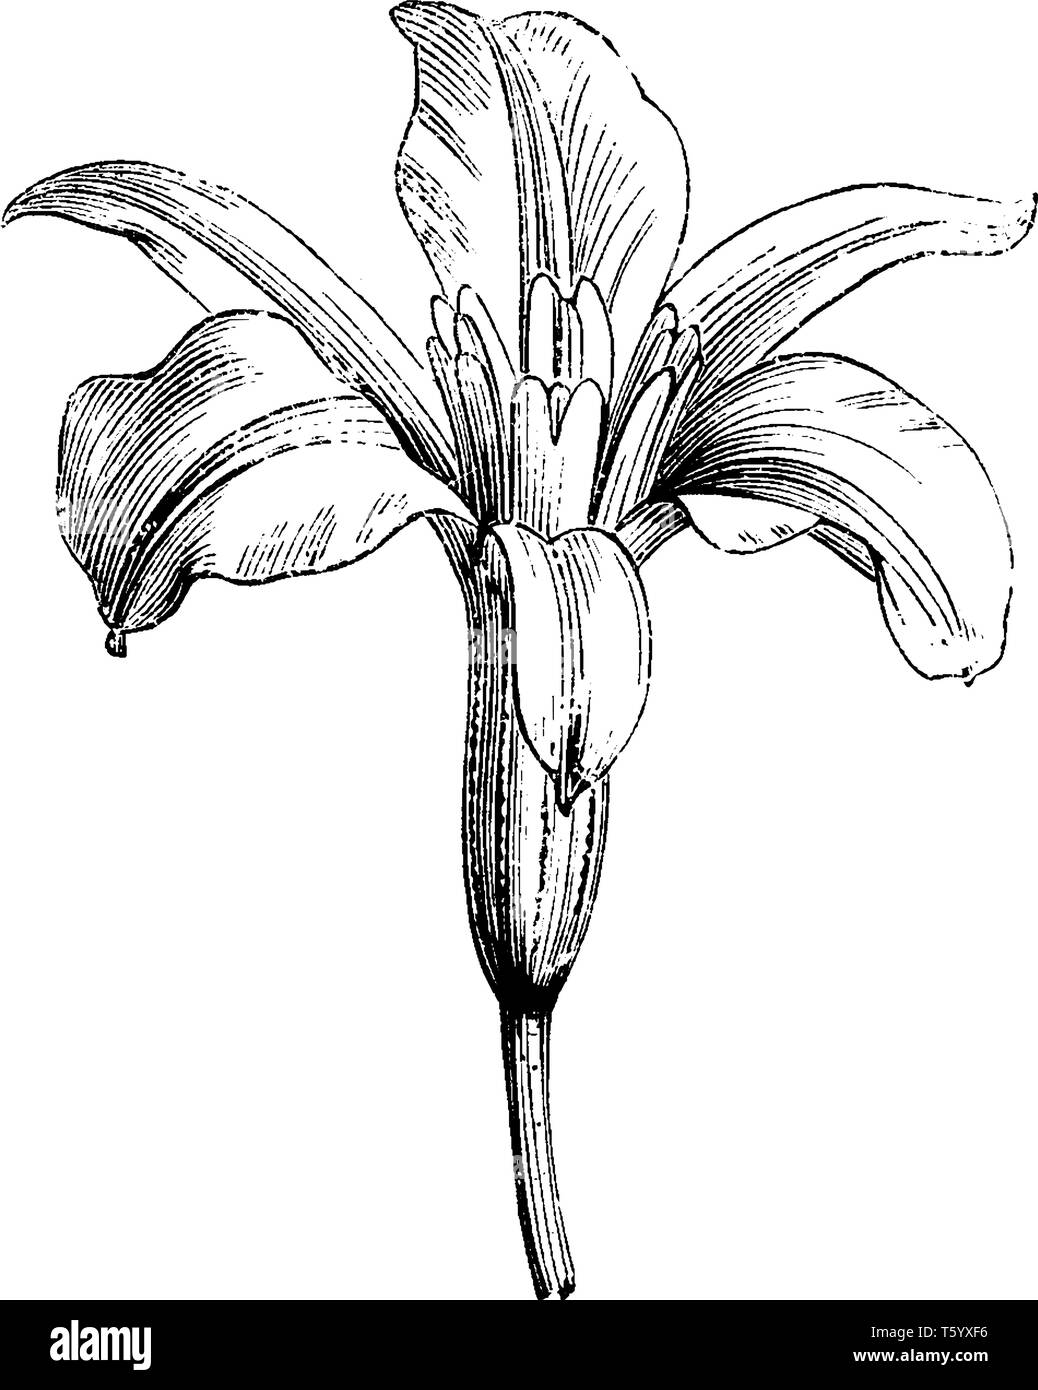 Die barbacenia purpurea Trompete geformte Blume und Sie haben fünf Blütenblatt. Die blumenstengel ist lang, vintage Strichzeichnung oder Gravur Abbildung. Stock Vektor